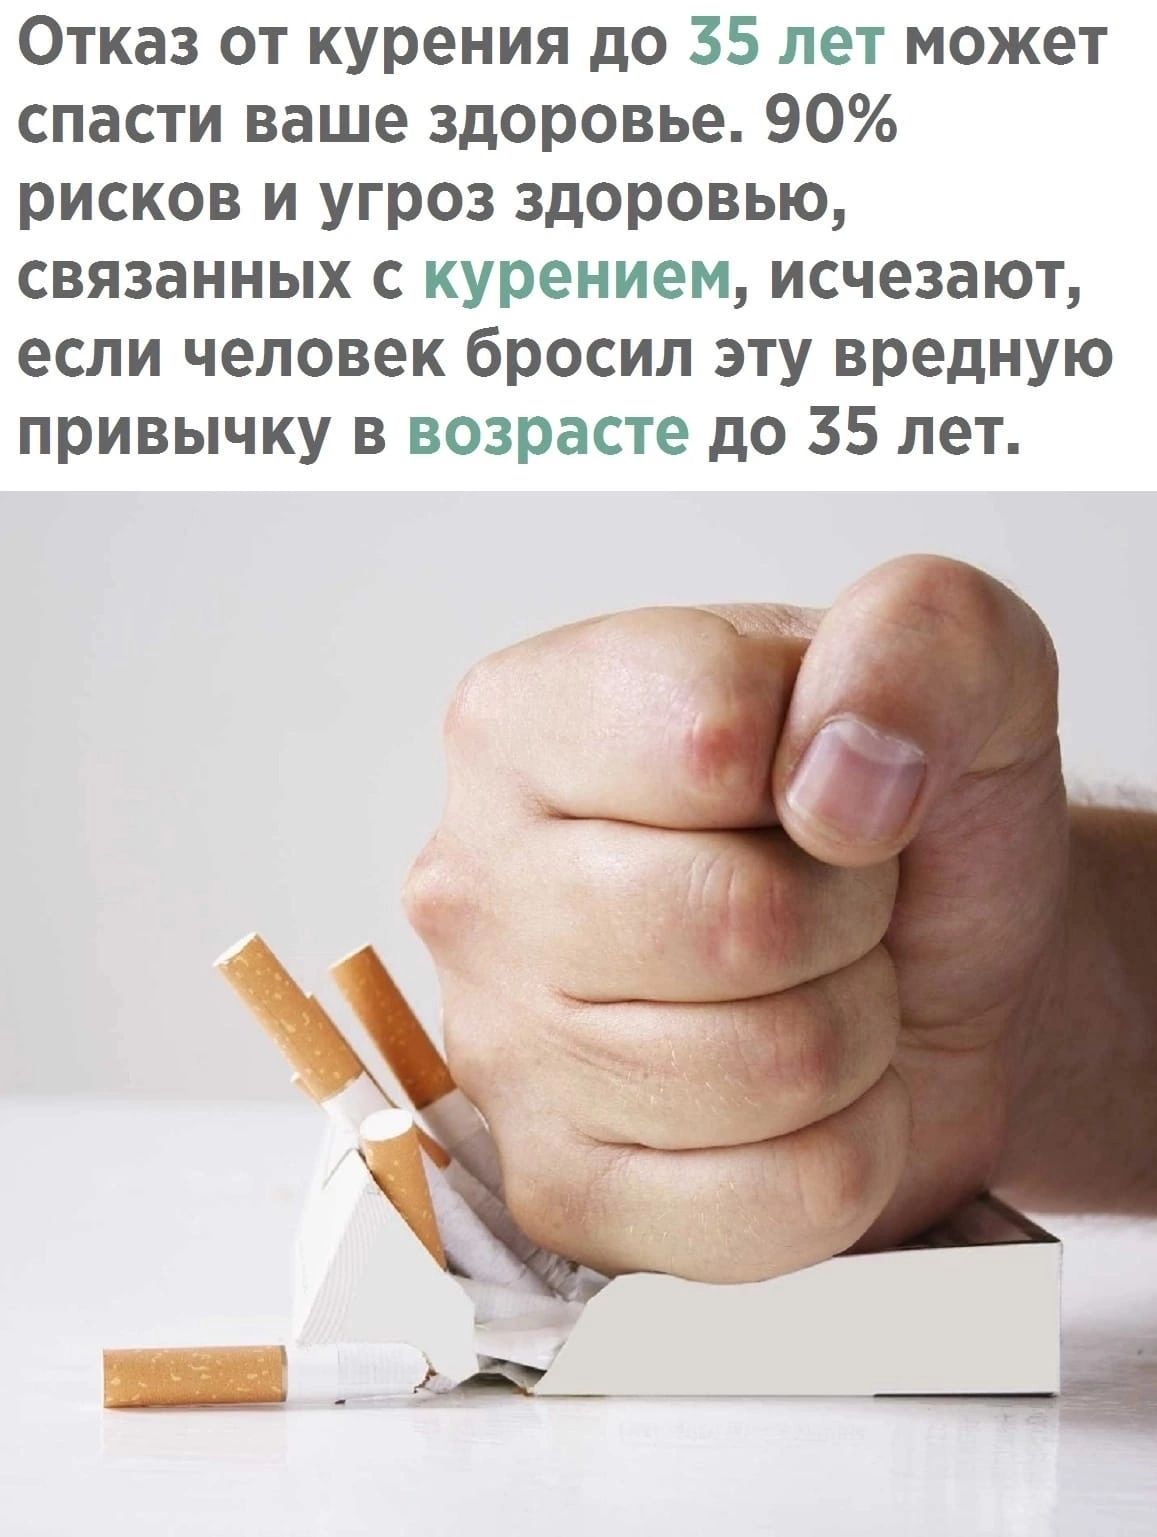 Отказ от курения до 35 лет может спасти ваше здоровье 90 рисков и угроз здоровью связанных с курением исчезают если человек бросил эту вредную привычку в возрасте до 35 лет